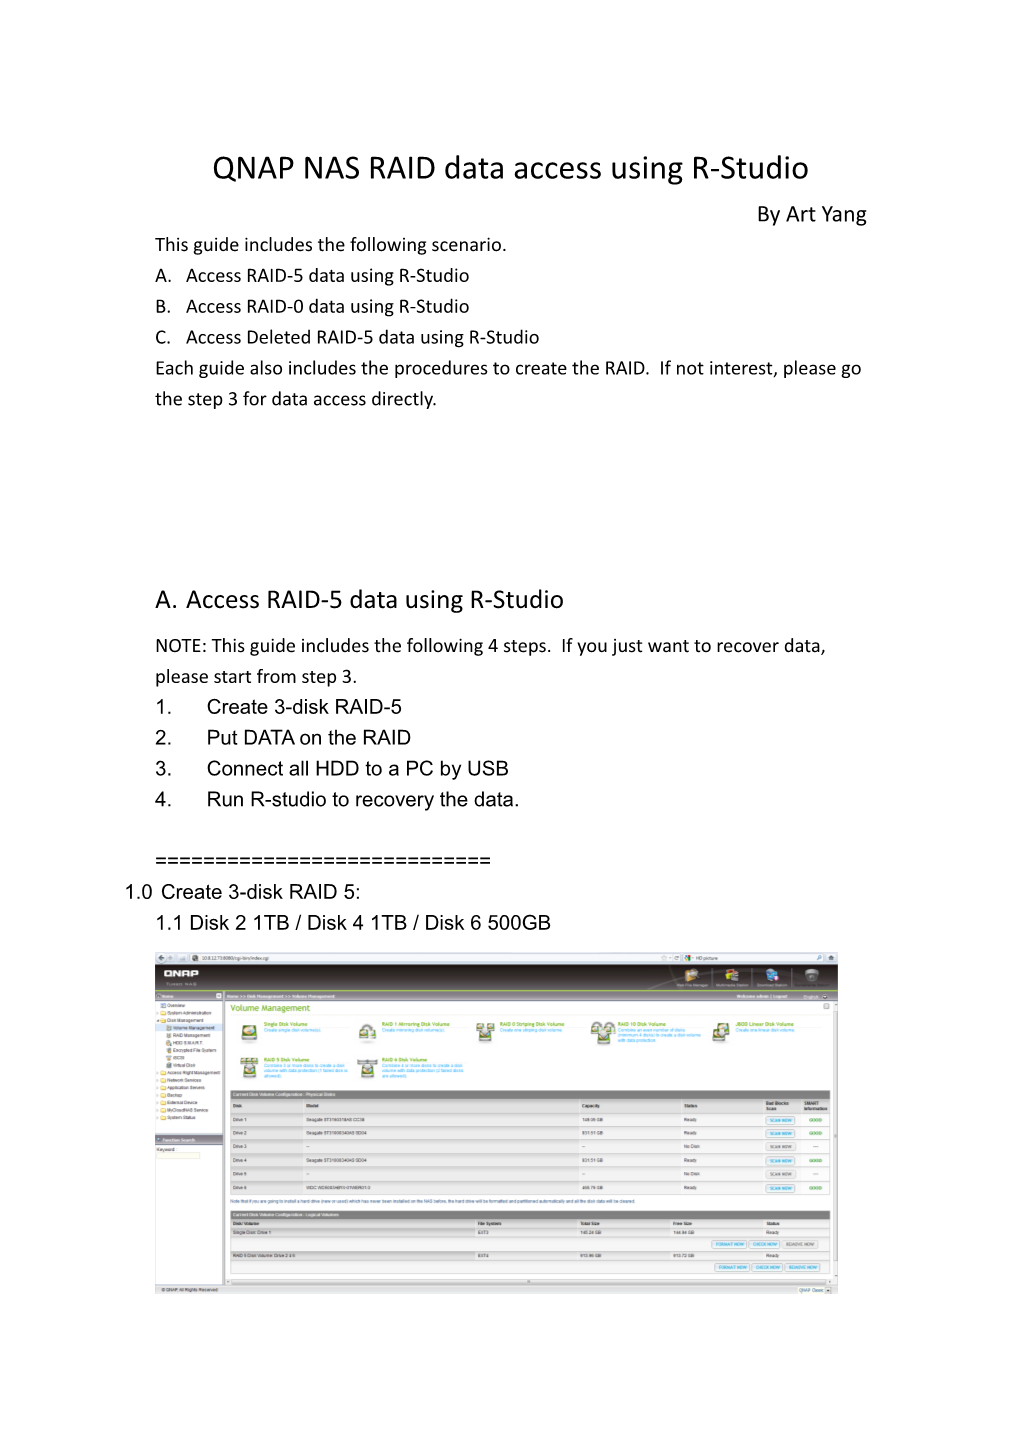 QNAP NAS RAID Data Access Using R-Studio